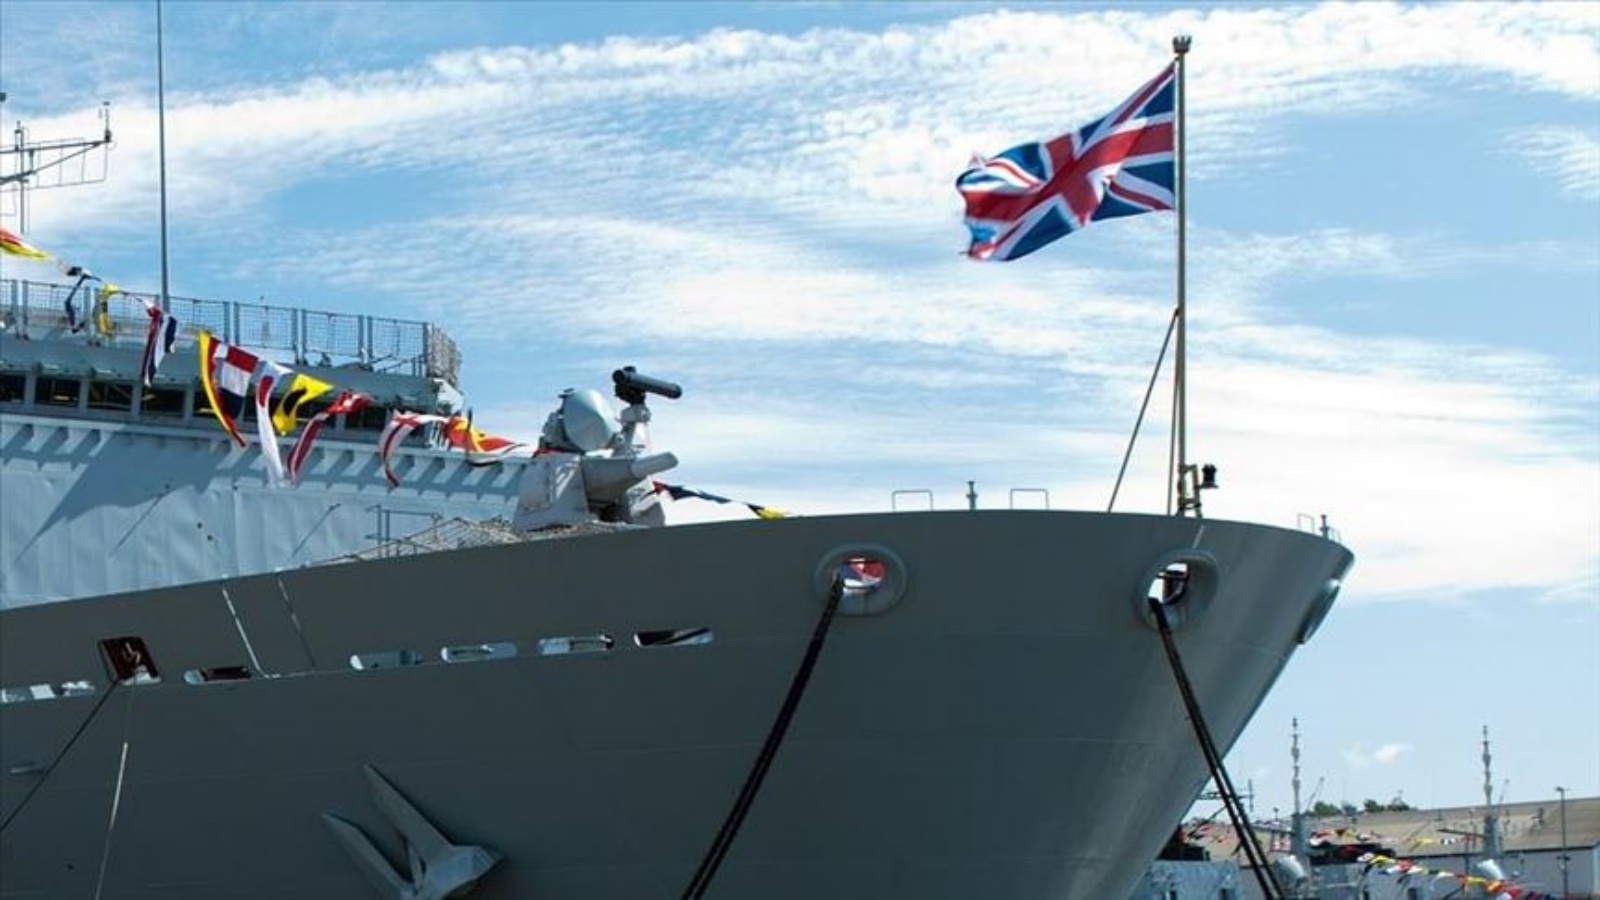 البحرية مستعدة لحماية مياه بريطانيا في حال عدم التوصل لاتفاق مع أوروبا